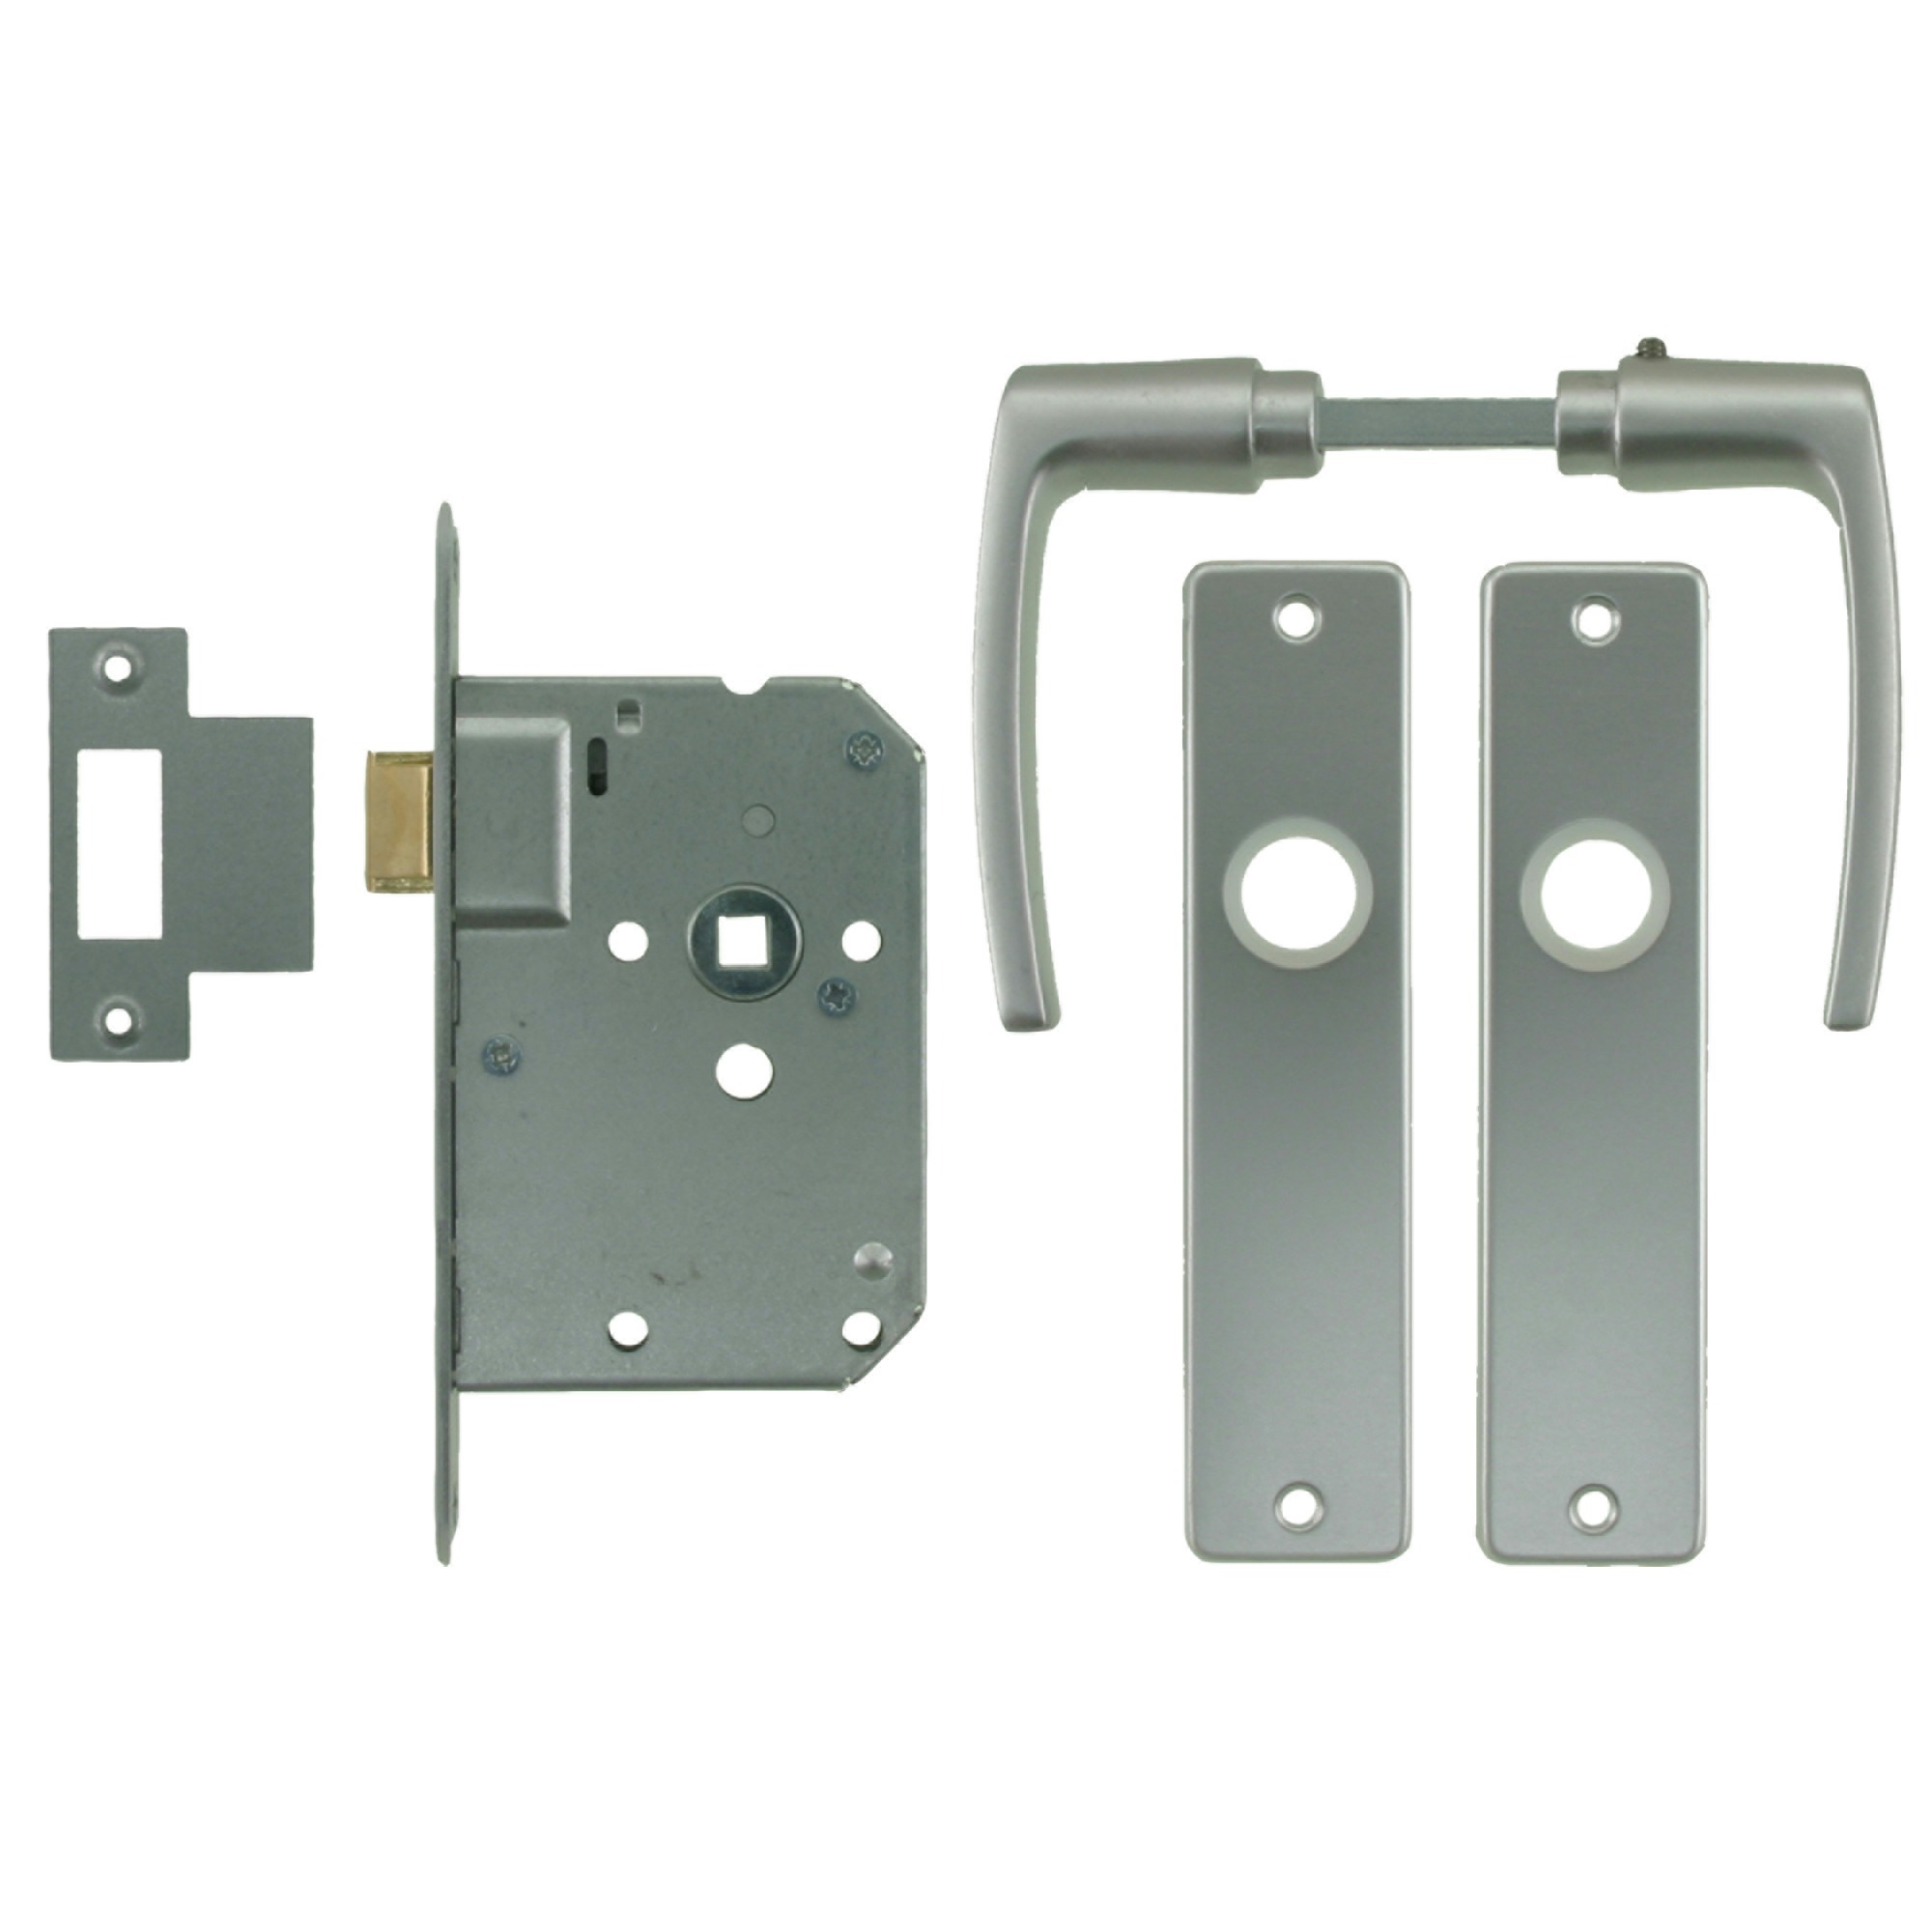 Nemef loopslot 1255/96 rechts - Doornmaat 50mm - Wit gelakte voorplaat - Met sluitplaat - Met deurbeslag en deurkrukken - Met bevestigingsmateriaal - In zichtverpakking